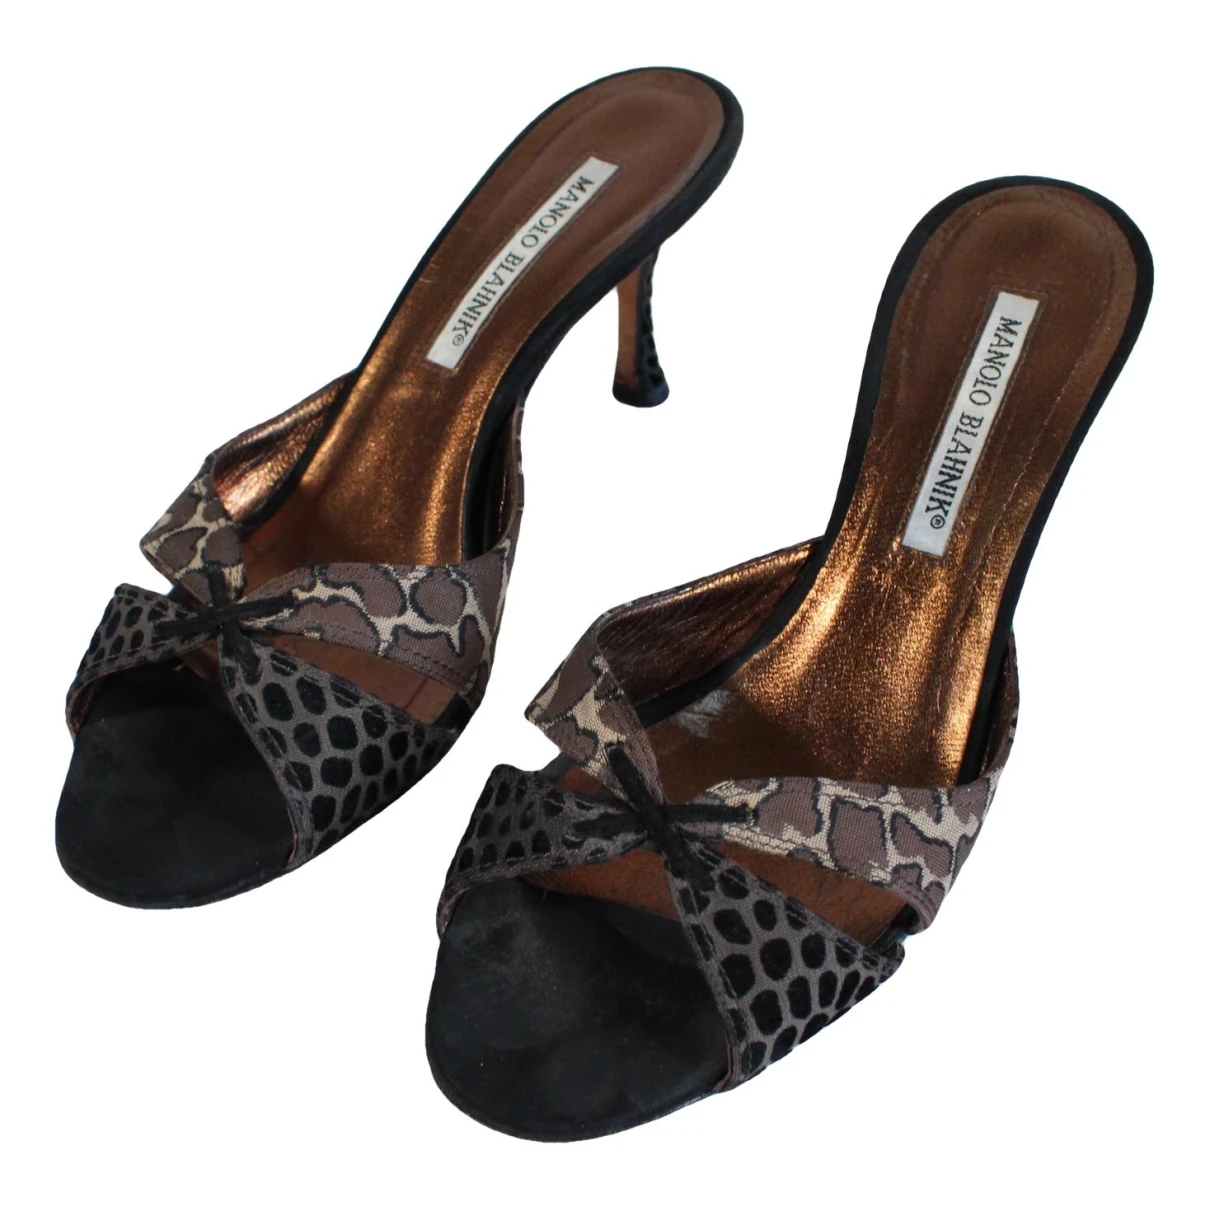 Pre-owned Manolo Blahnik Leather Sandal In Brown